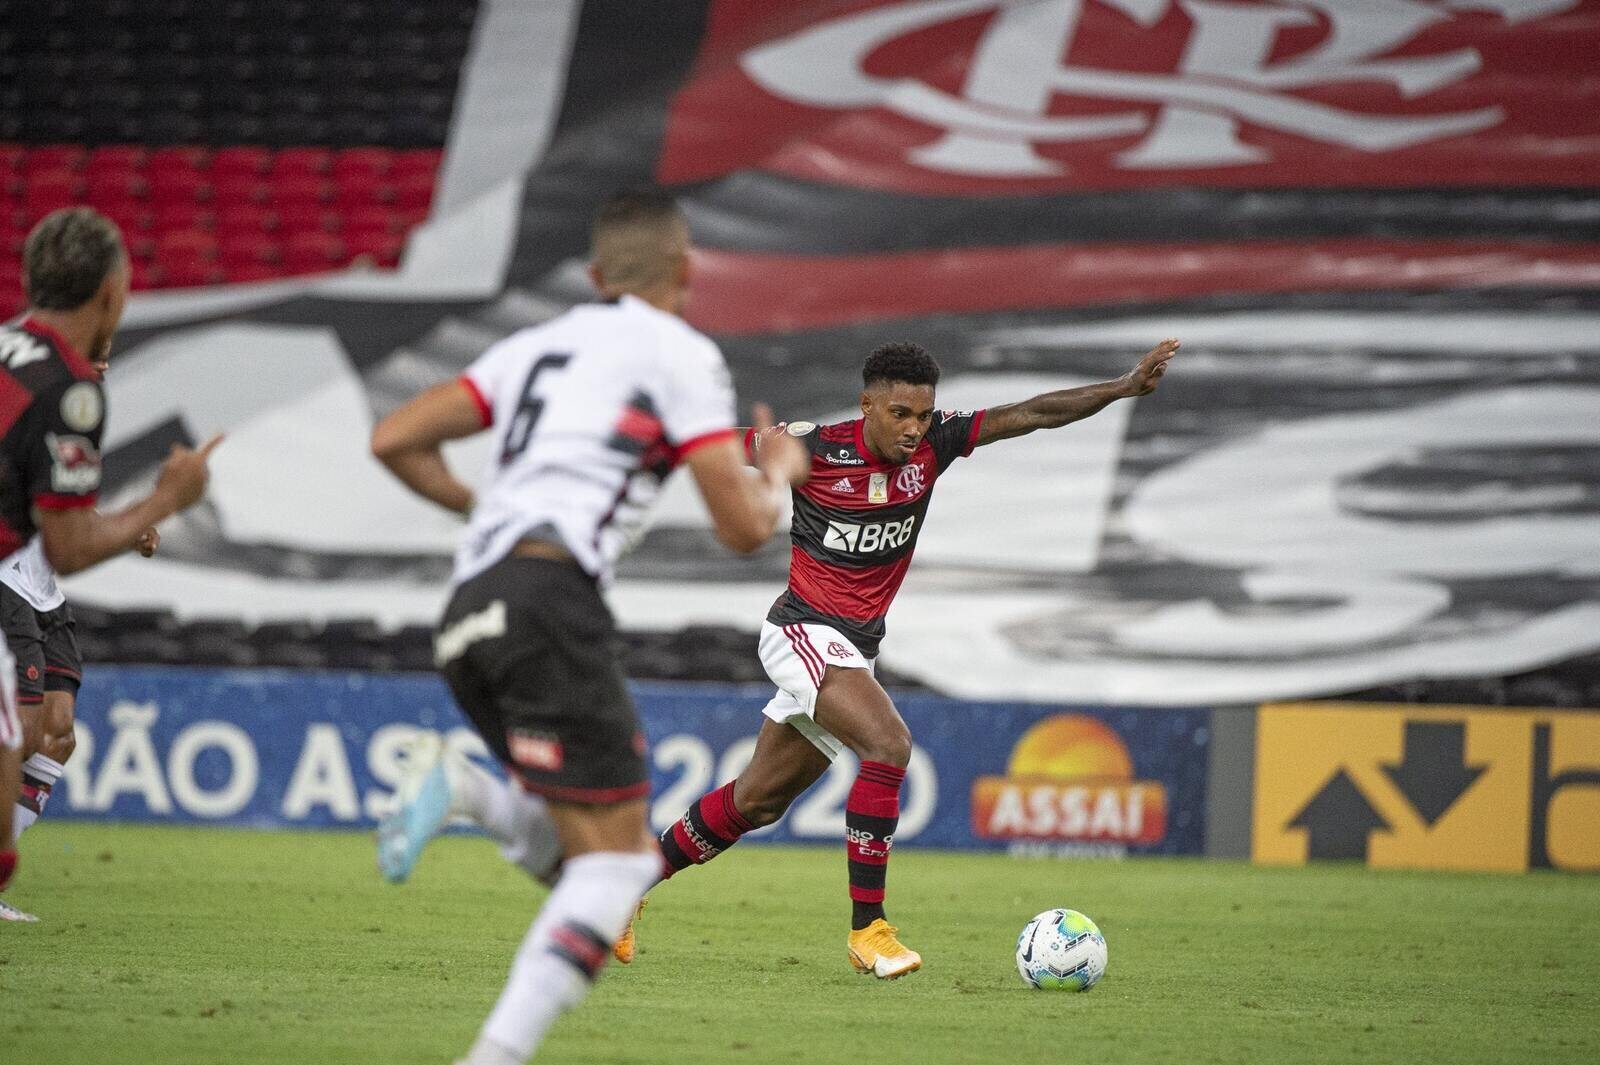 Flamengo empata com Atlético-GO e perde chance de colar no líder Atlético-MG